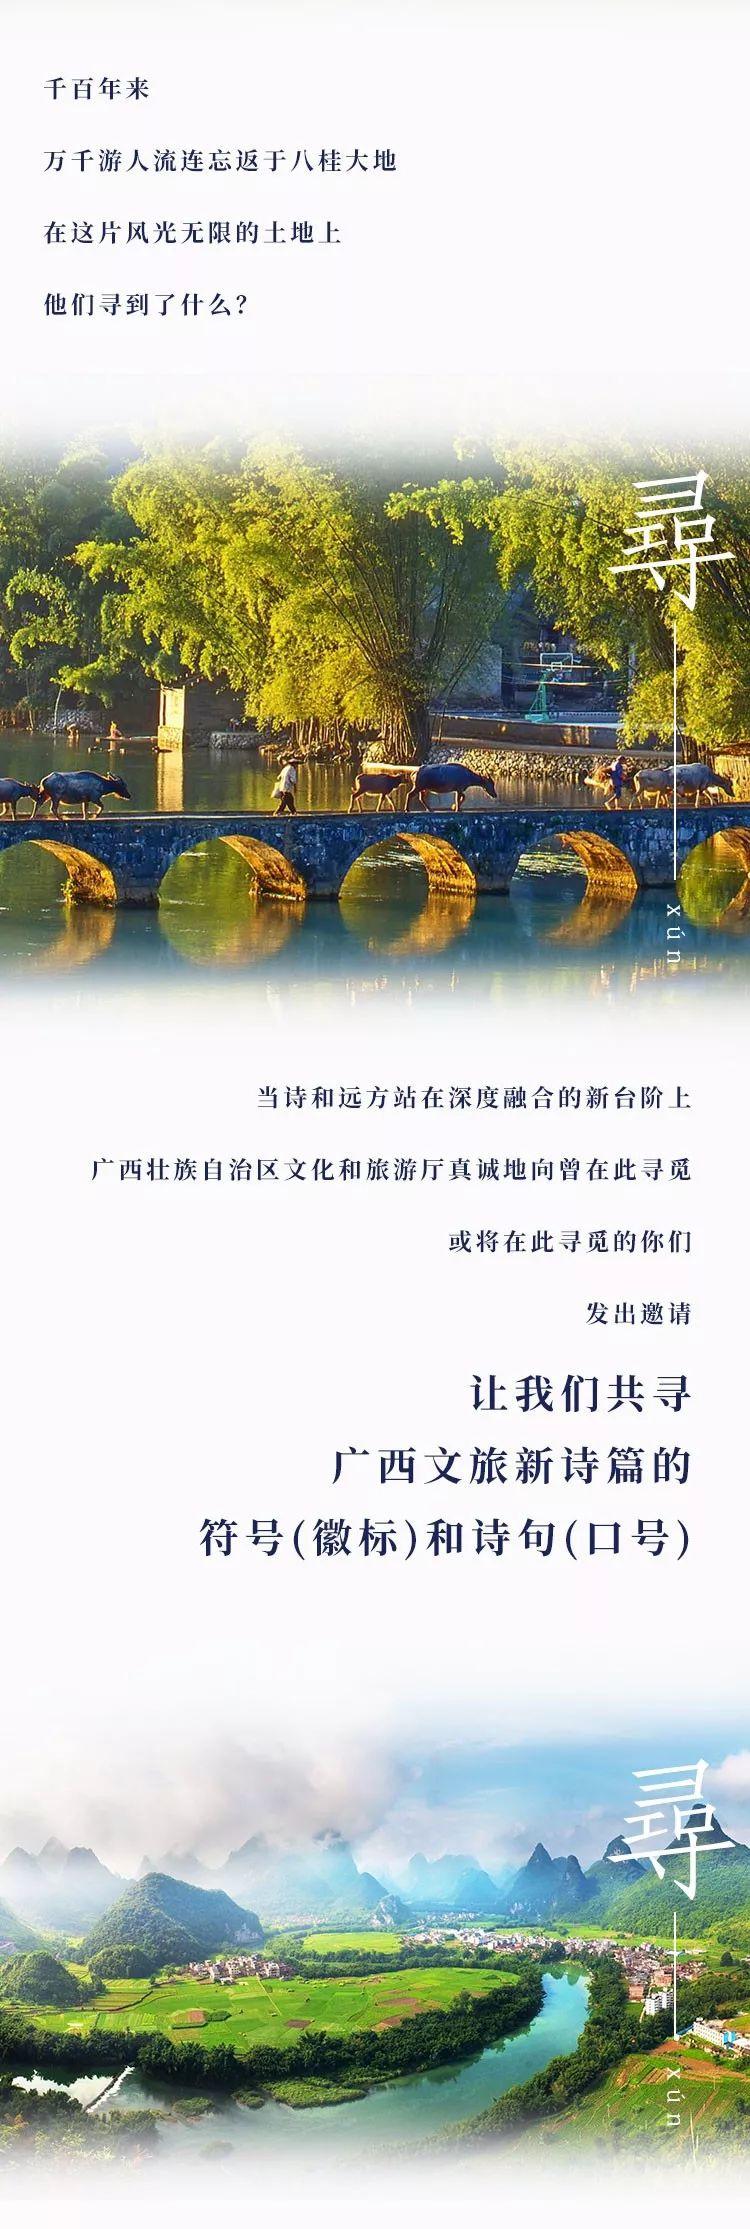 头条 | 广西文化旅游logo及slogan全球征集正式启动